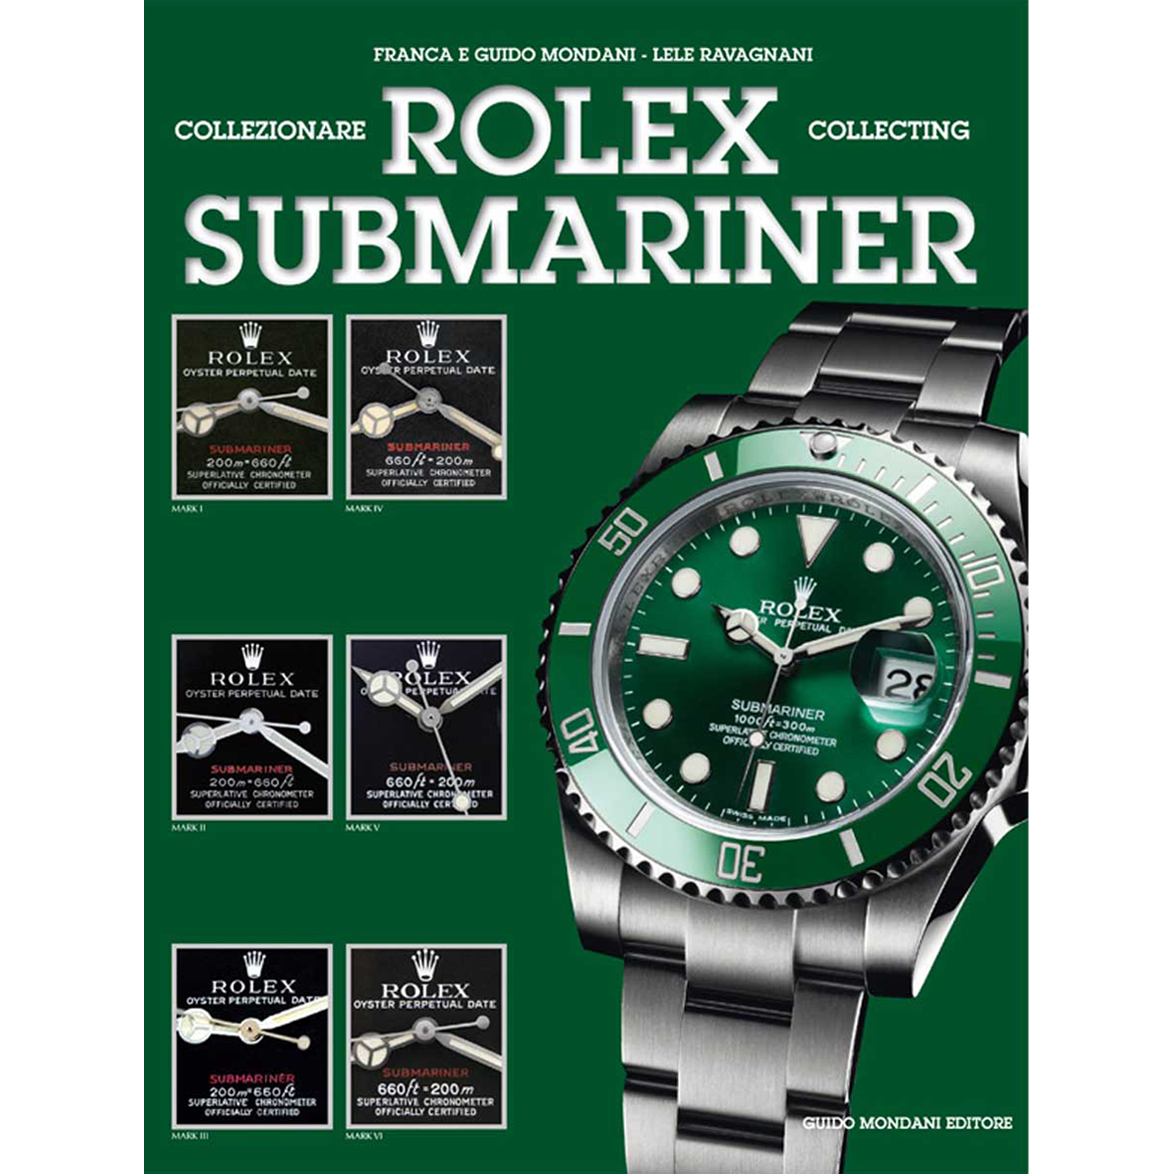 collecting rolex submariner